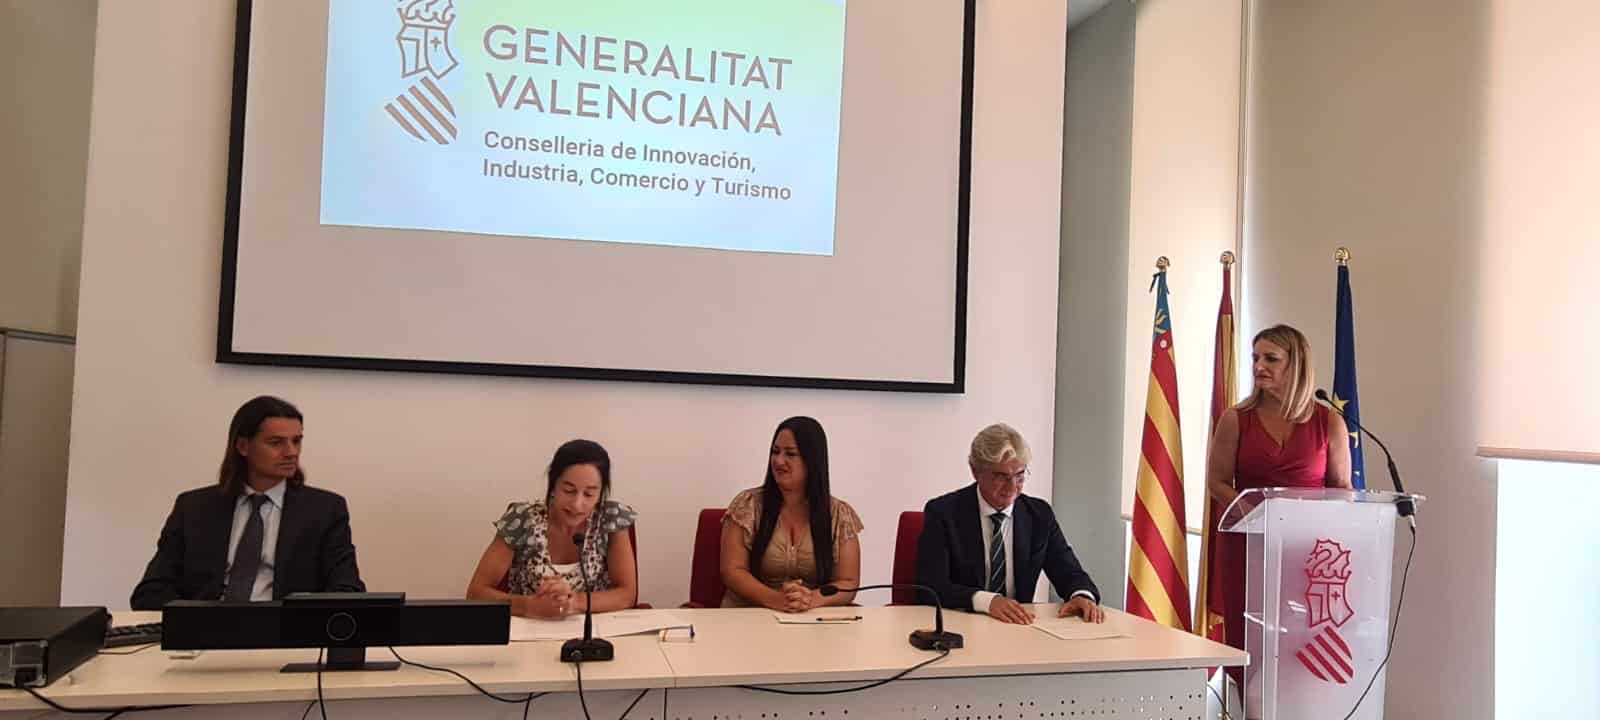 Nuria Montes busca soluciones para el tejido productivo con un nuevo enfoque fiscal en la Comunidad Valenciana